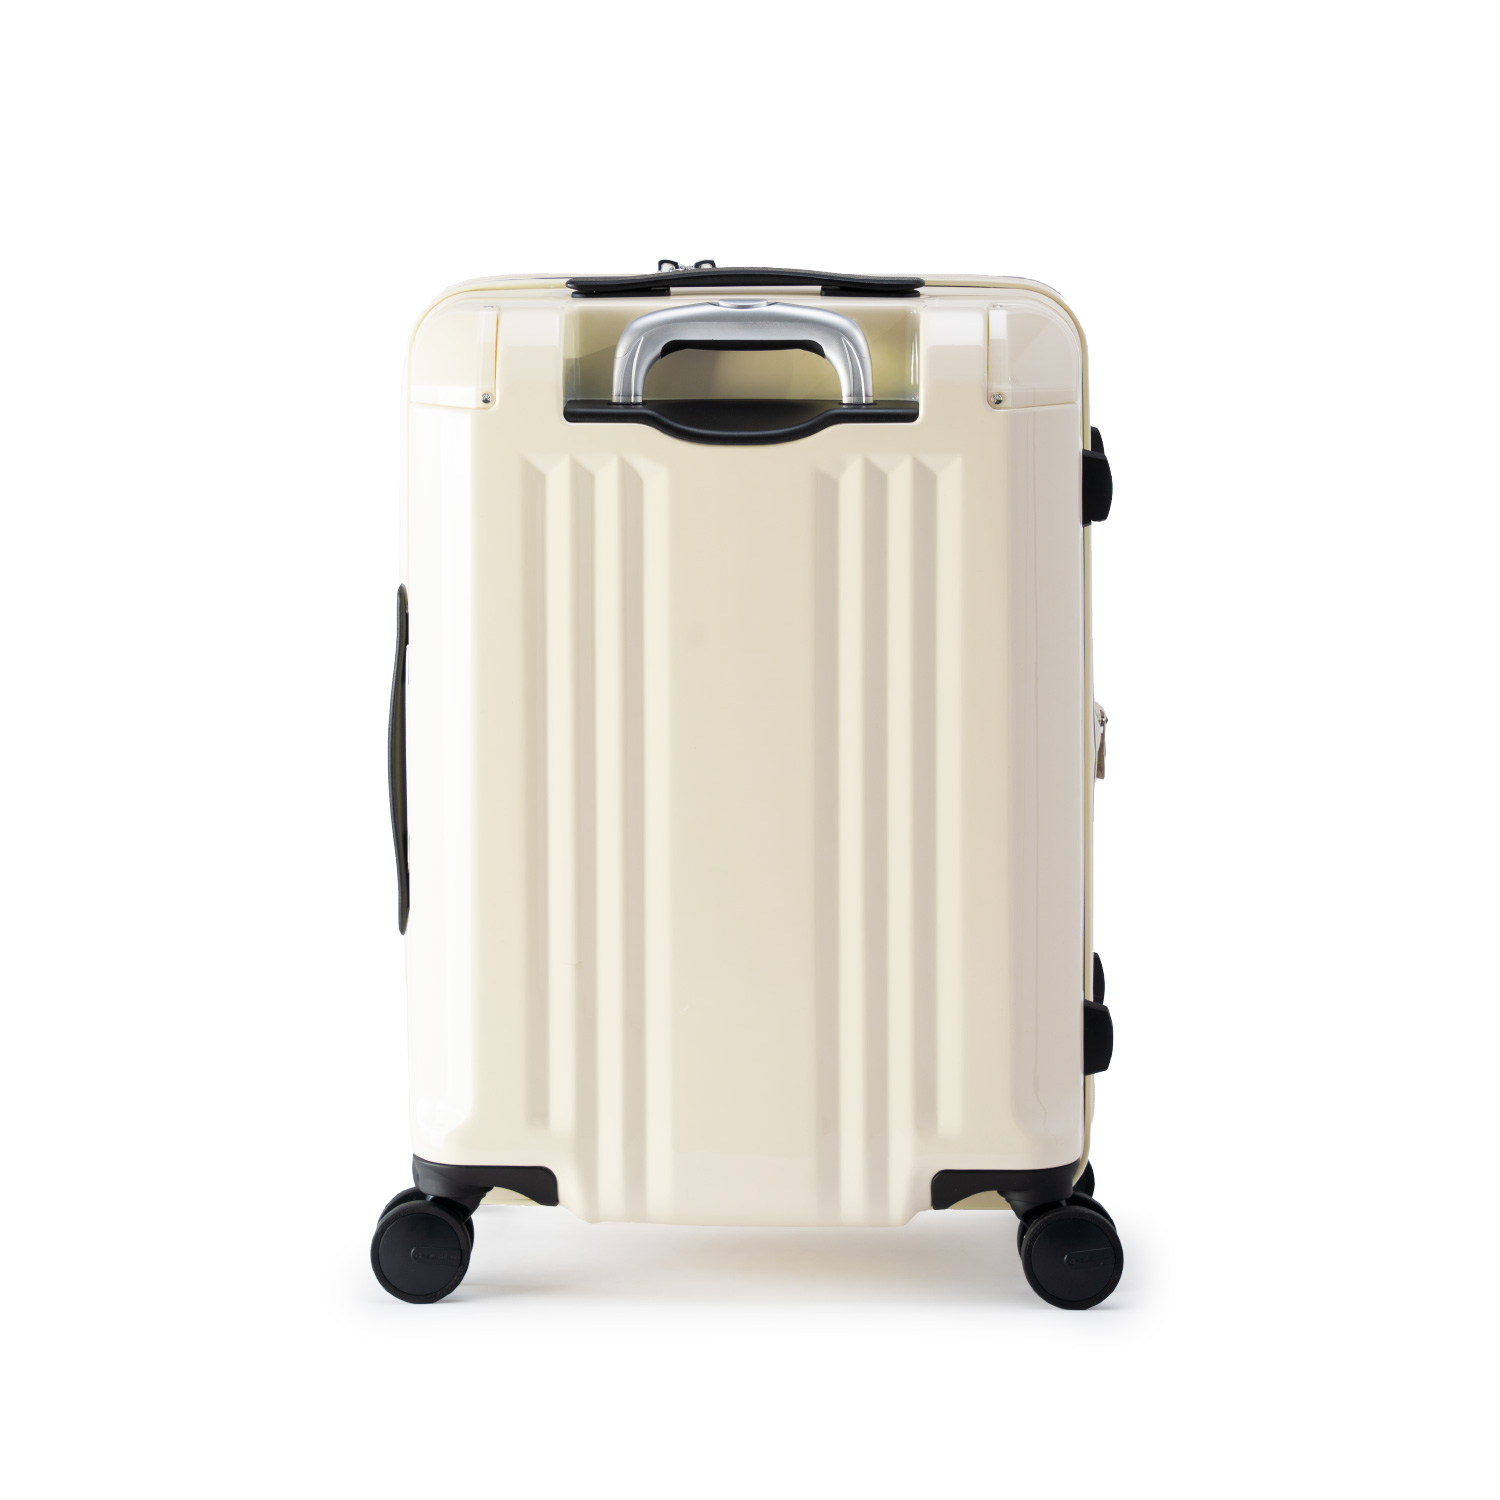 アジア・ラゲージのスーツケース デカかるEdge | アジア・ラゲージ